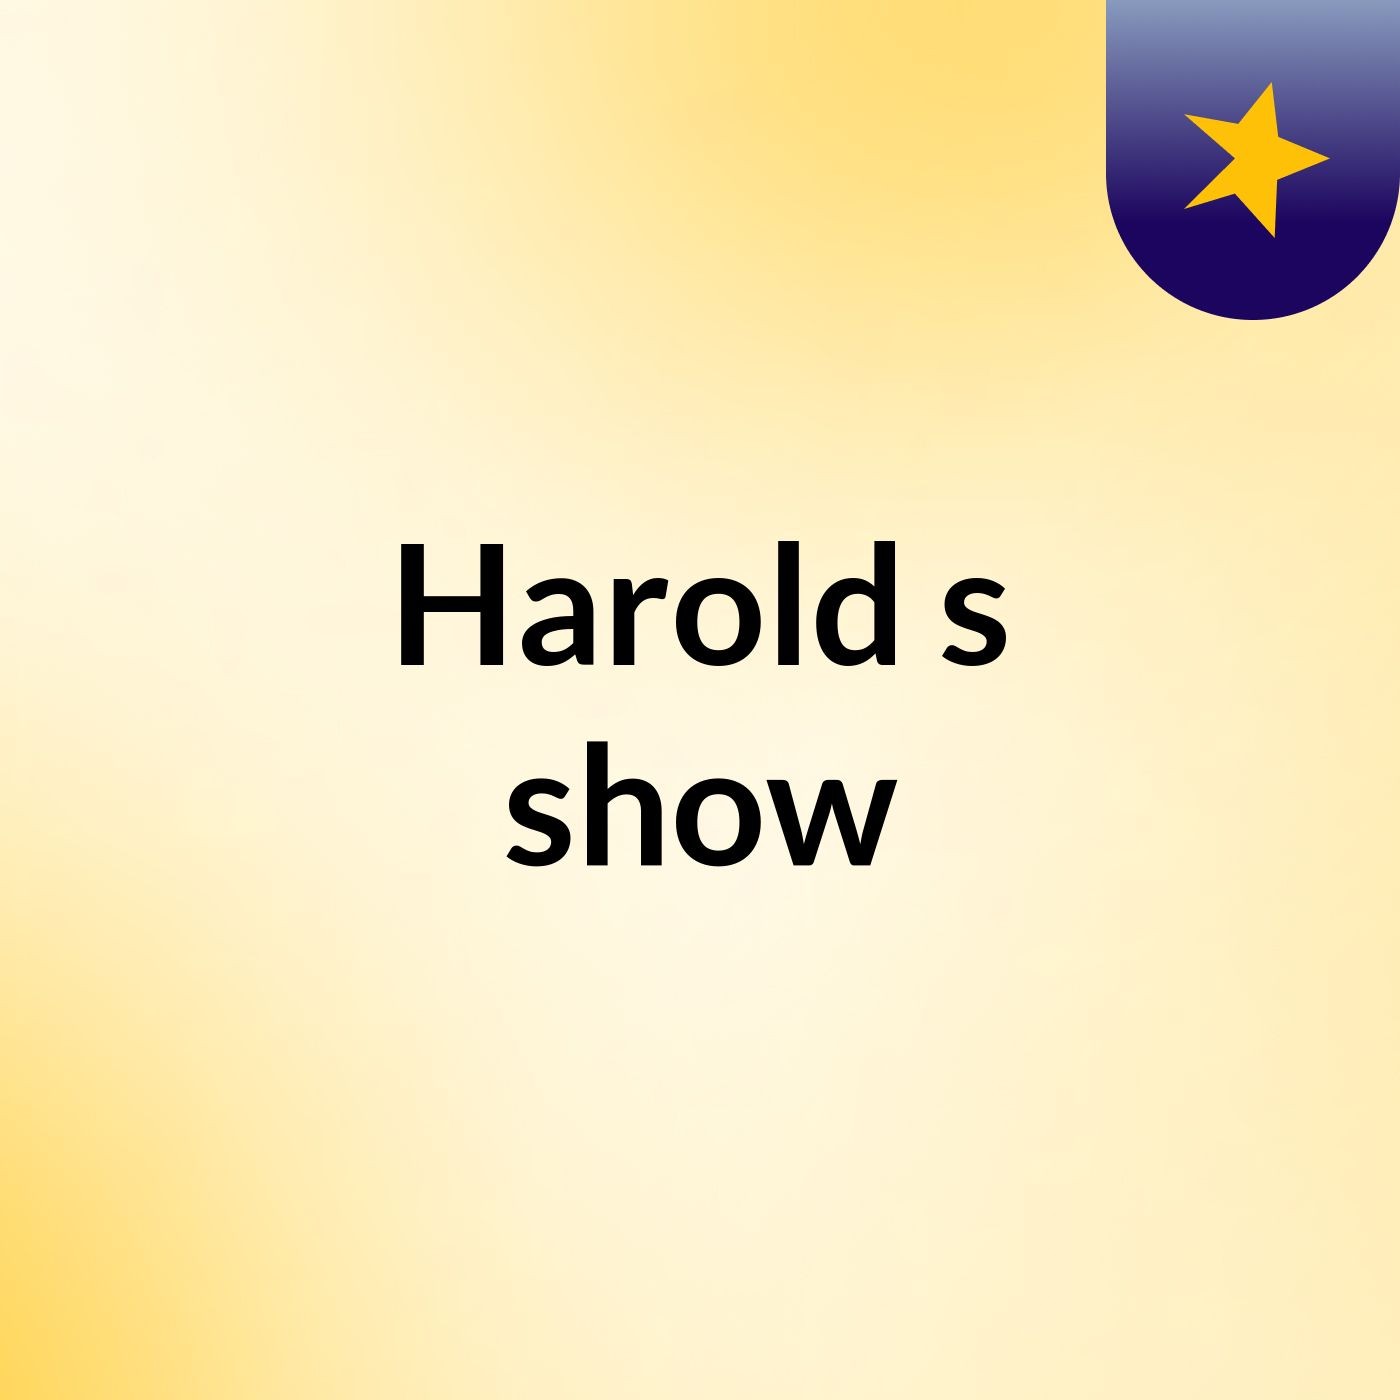 Harold's show